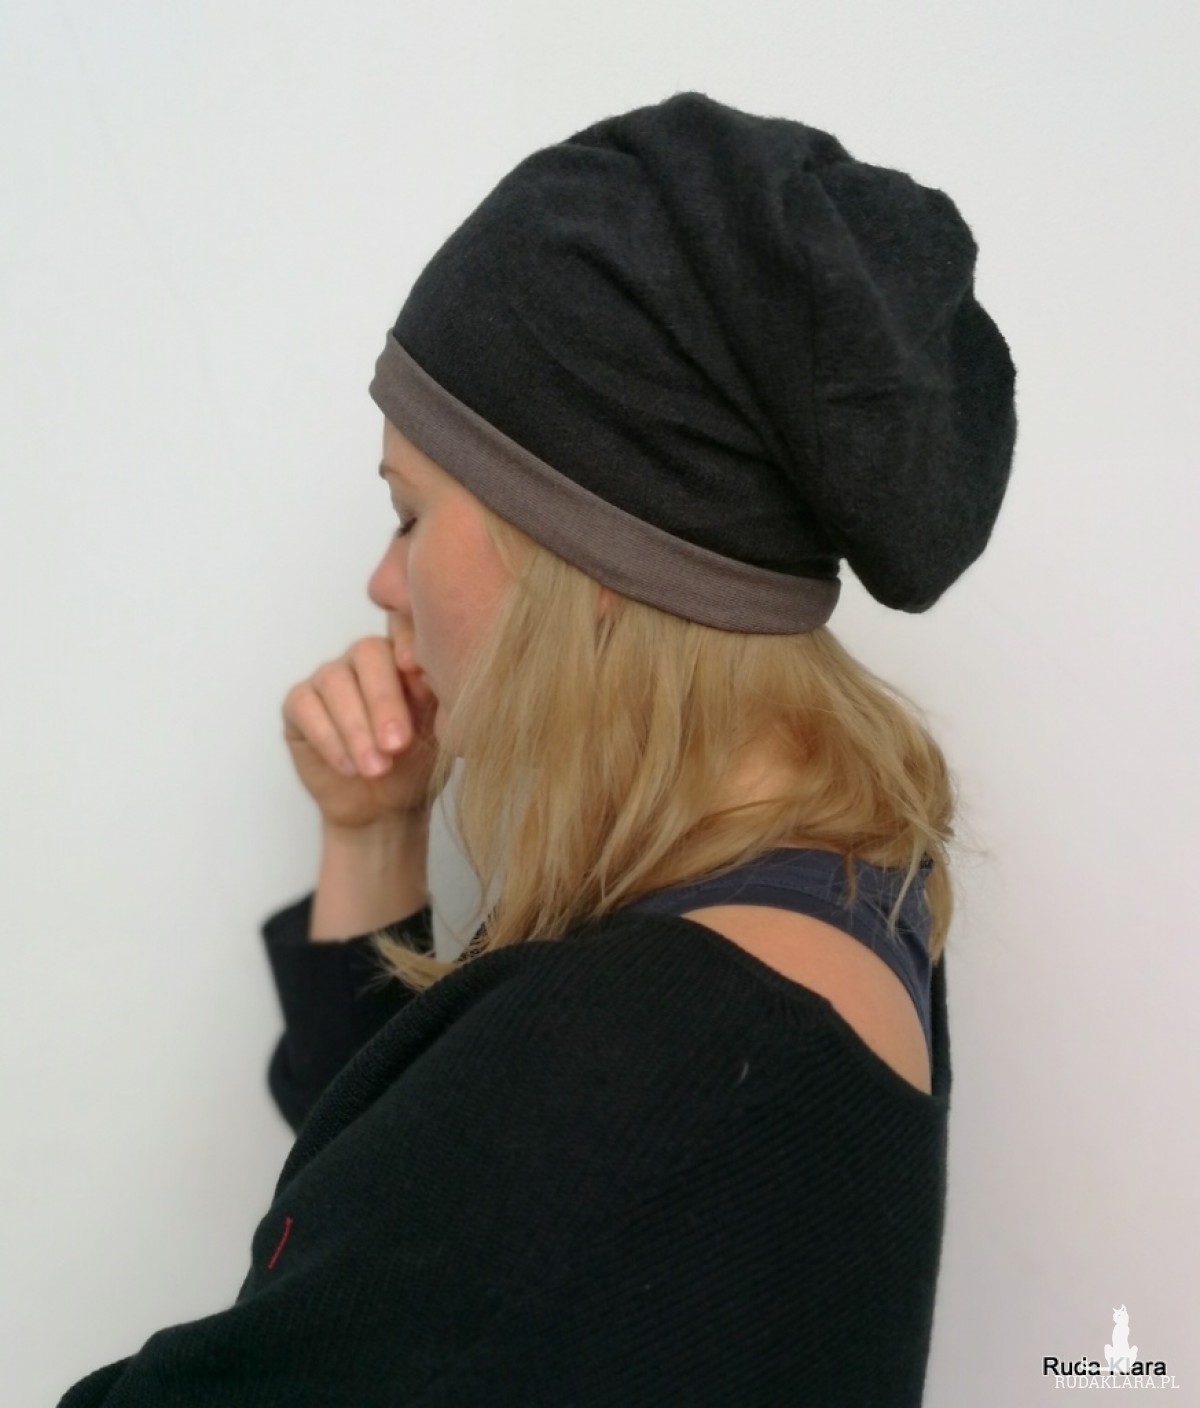 czarna damska czapka z dzianiny swetrowej przylegająca do głowy, czapka dla dziecka